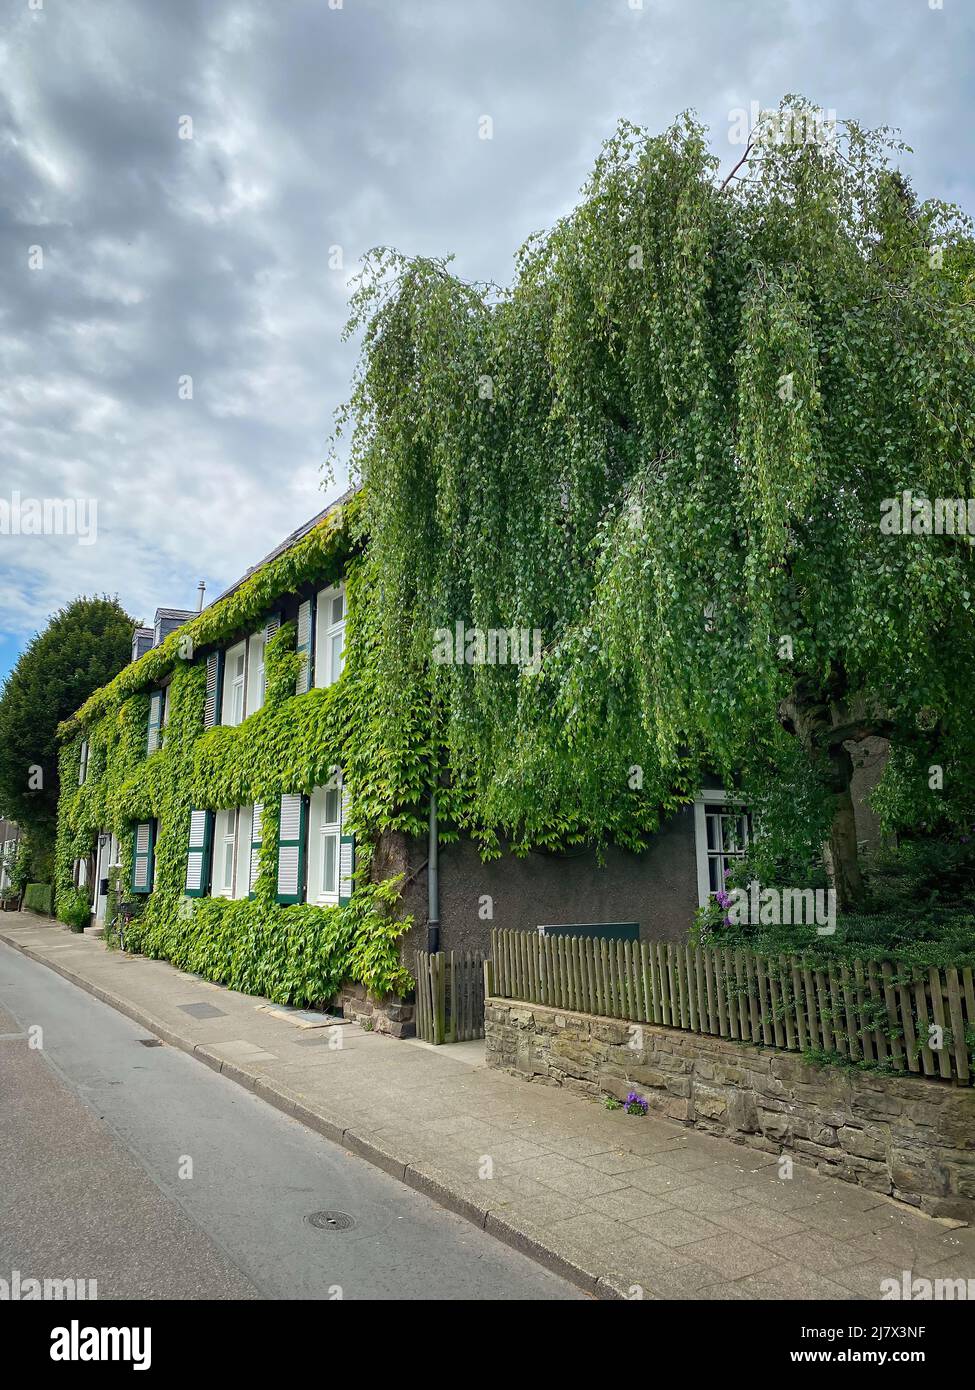 Hermosa casa cubierta de hojas de vid en el barrio “Margarethenhöhe”, el primer asentamiento del movimiento de la ciudad jardín en Alemania. Foto de stock